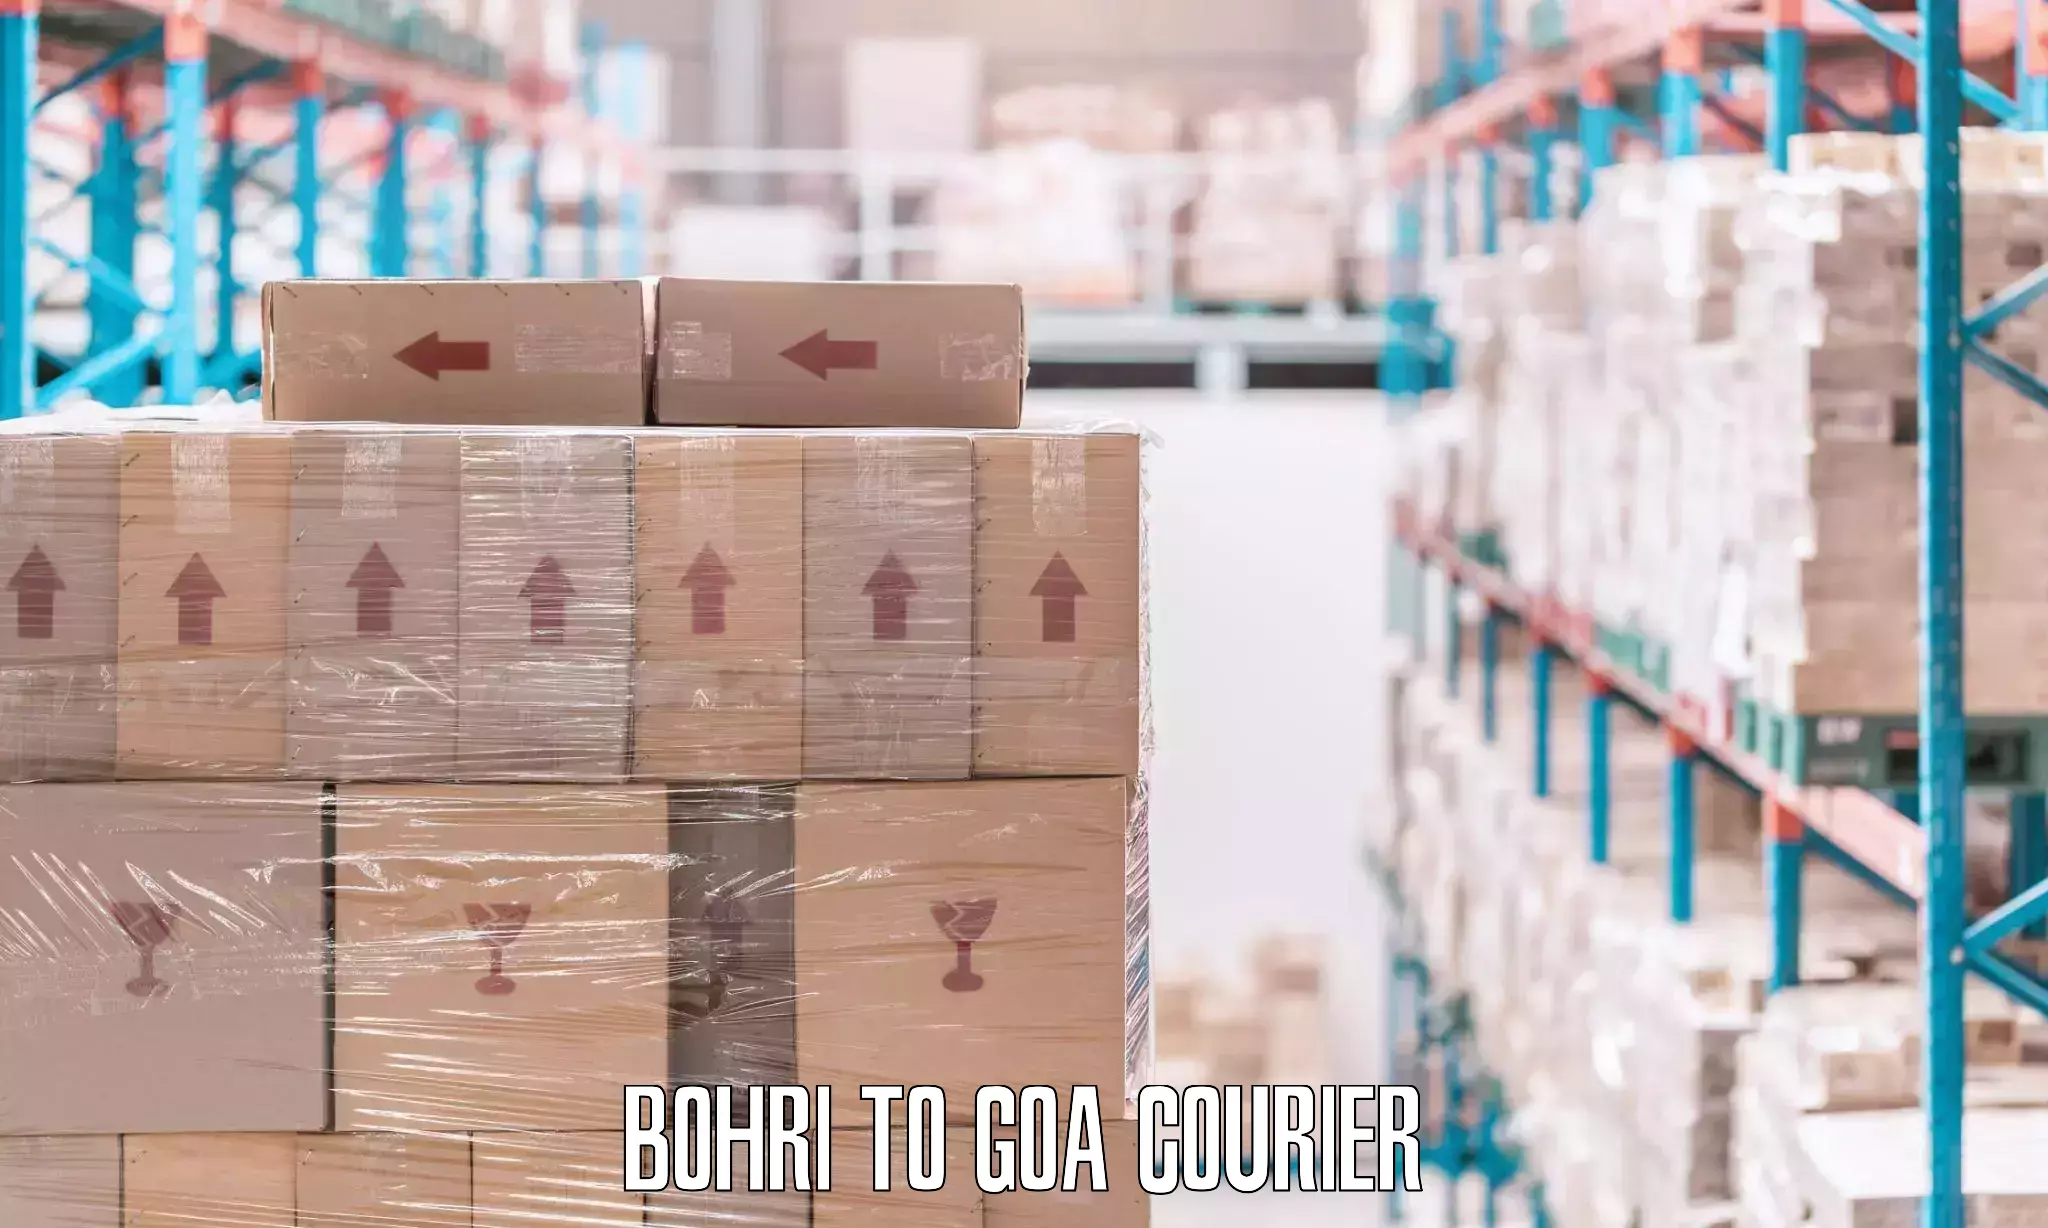 Furniture transport service Bohri to Goa